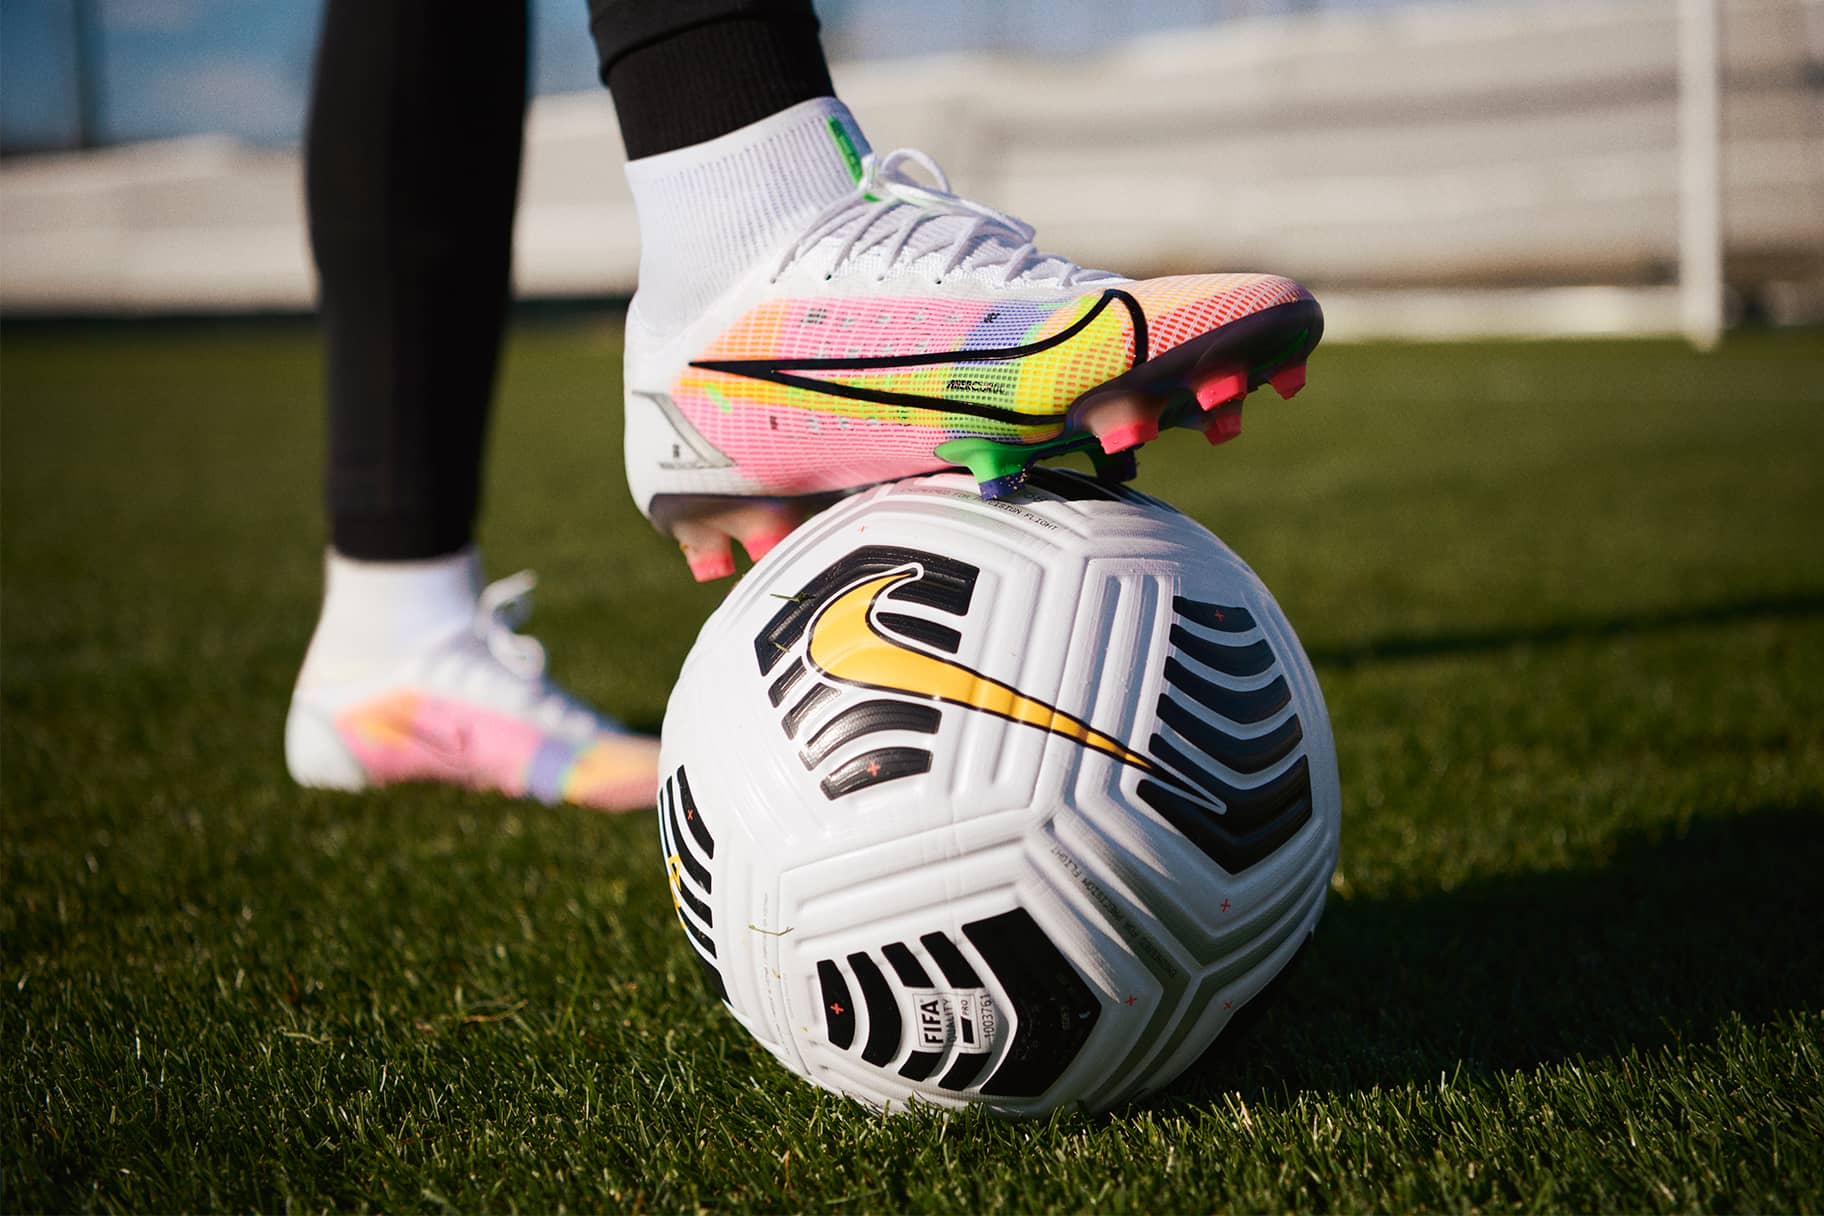 Soccer Shoes. Nike.com